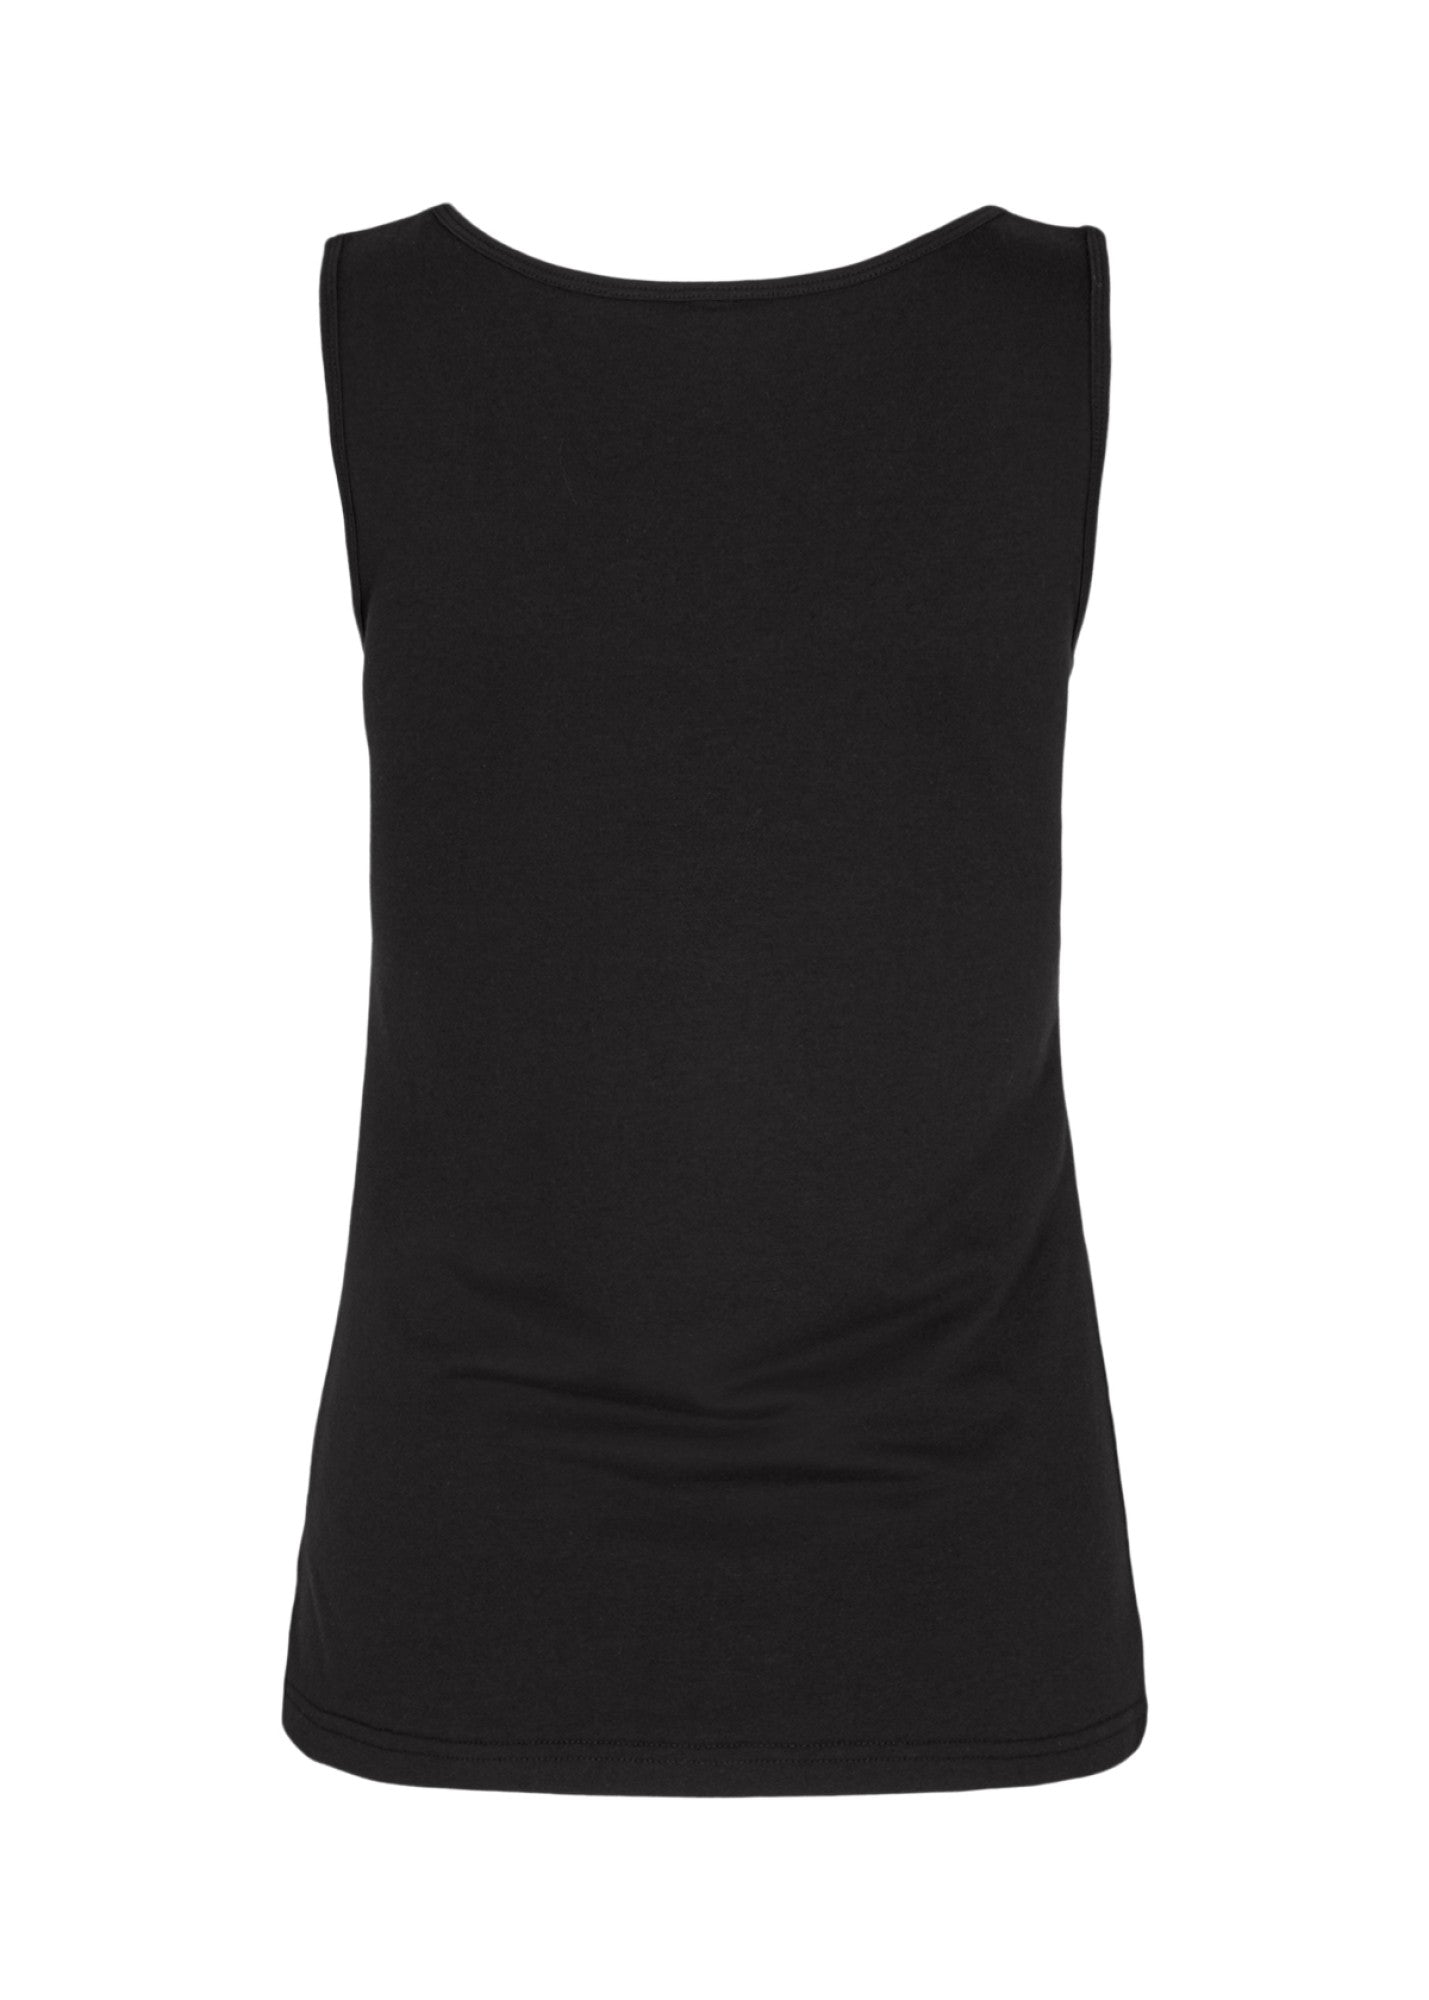 Soya Concept Basic Vest Black